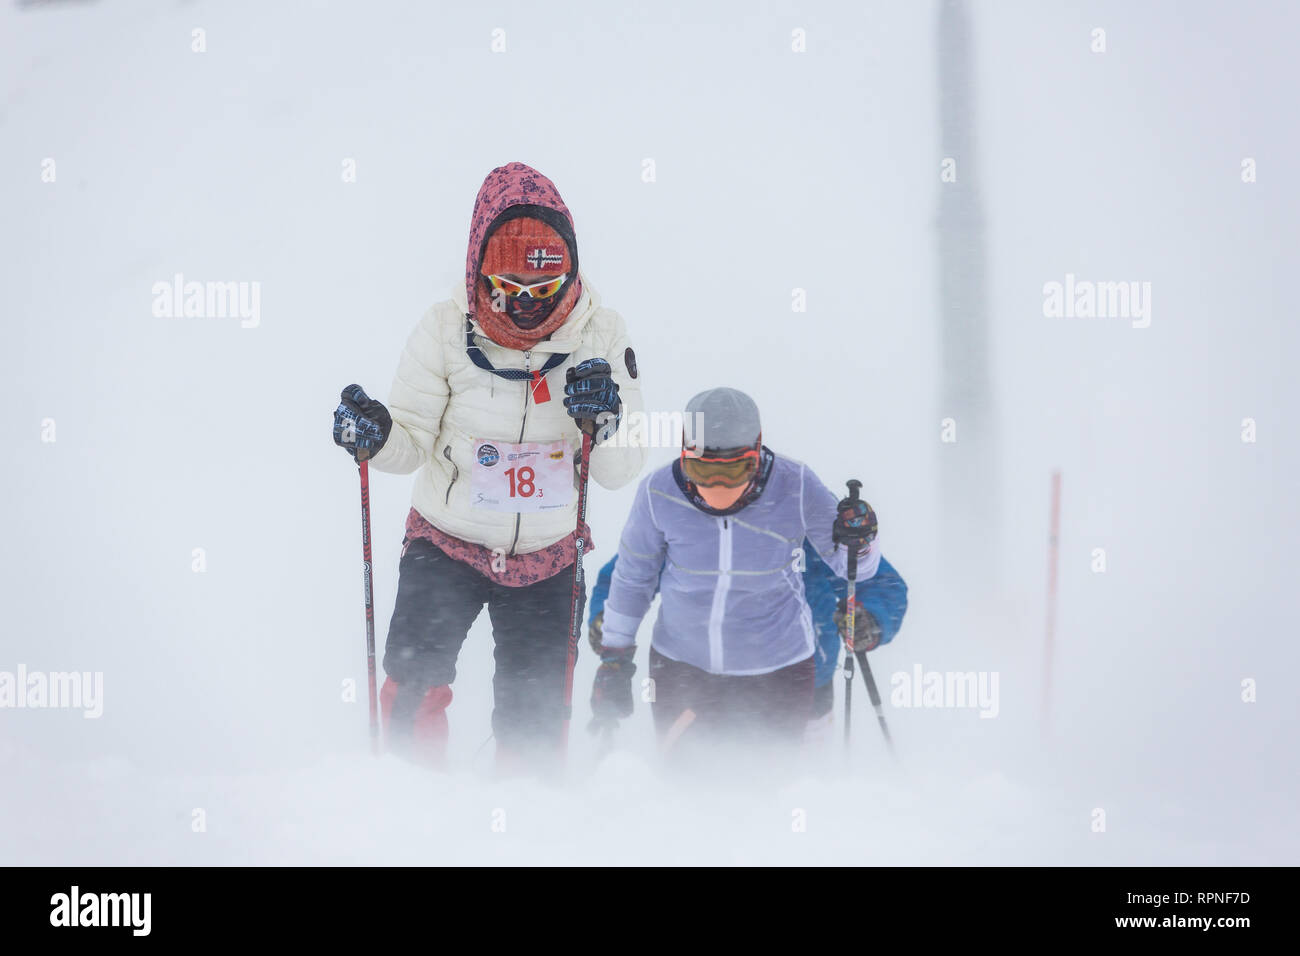 ALMATY KAZAKHSTAN - 03 février 2019 : des personnes non identifiées, à pied dans une tempête au cours de l'AlpineRais la concurrence dans les montagnes pendant la Banque D'Images